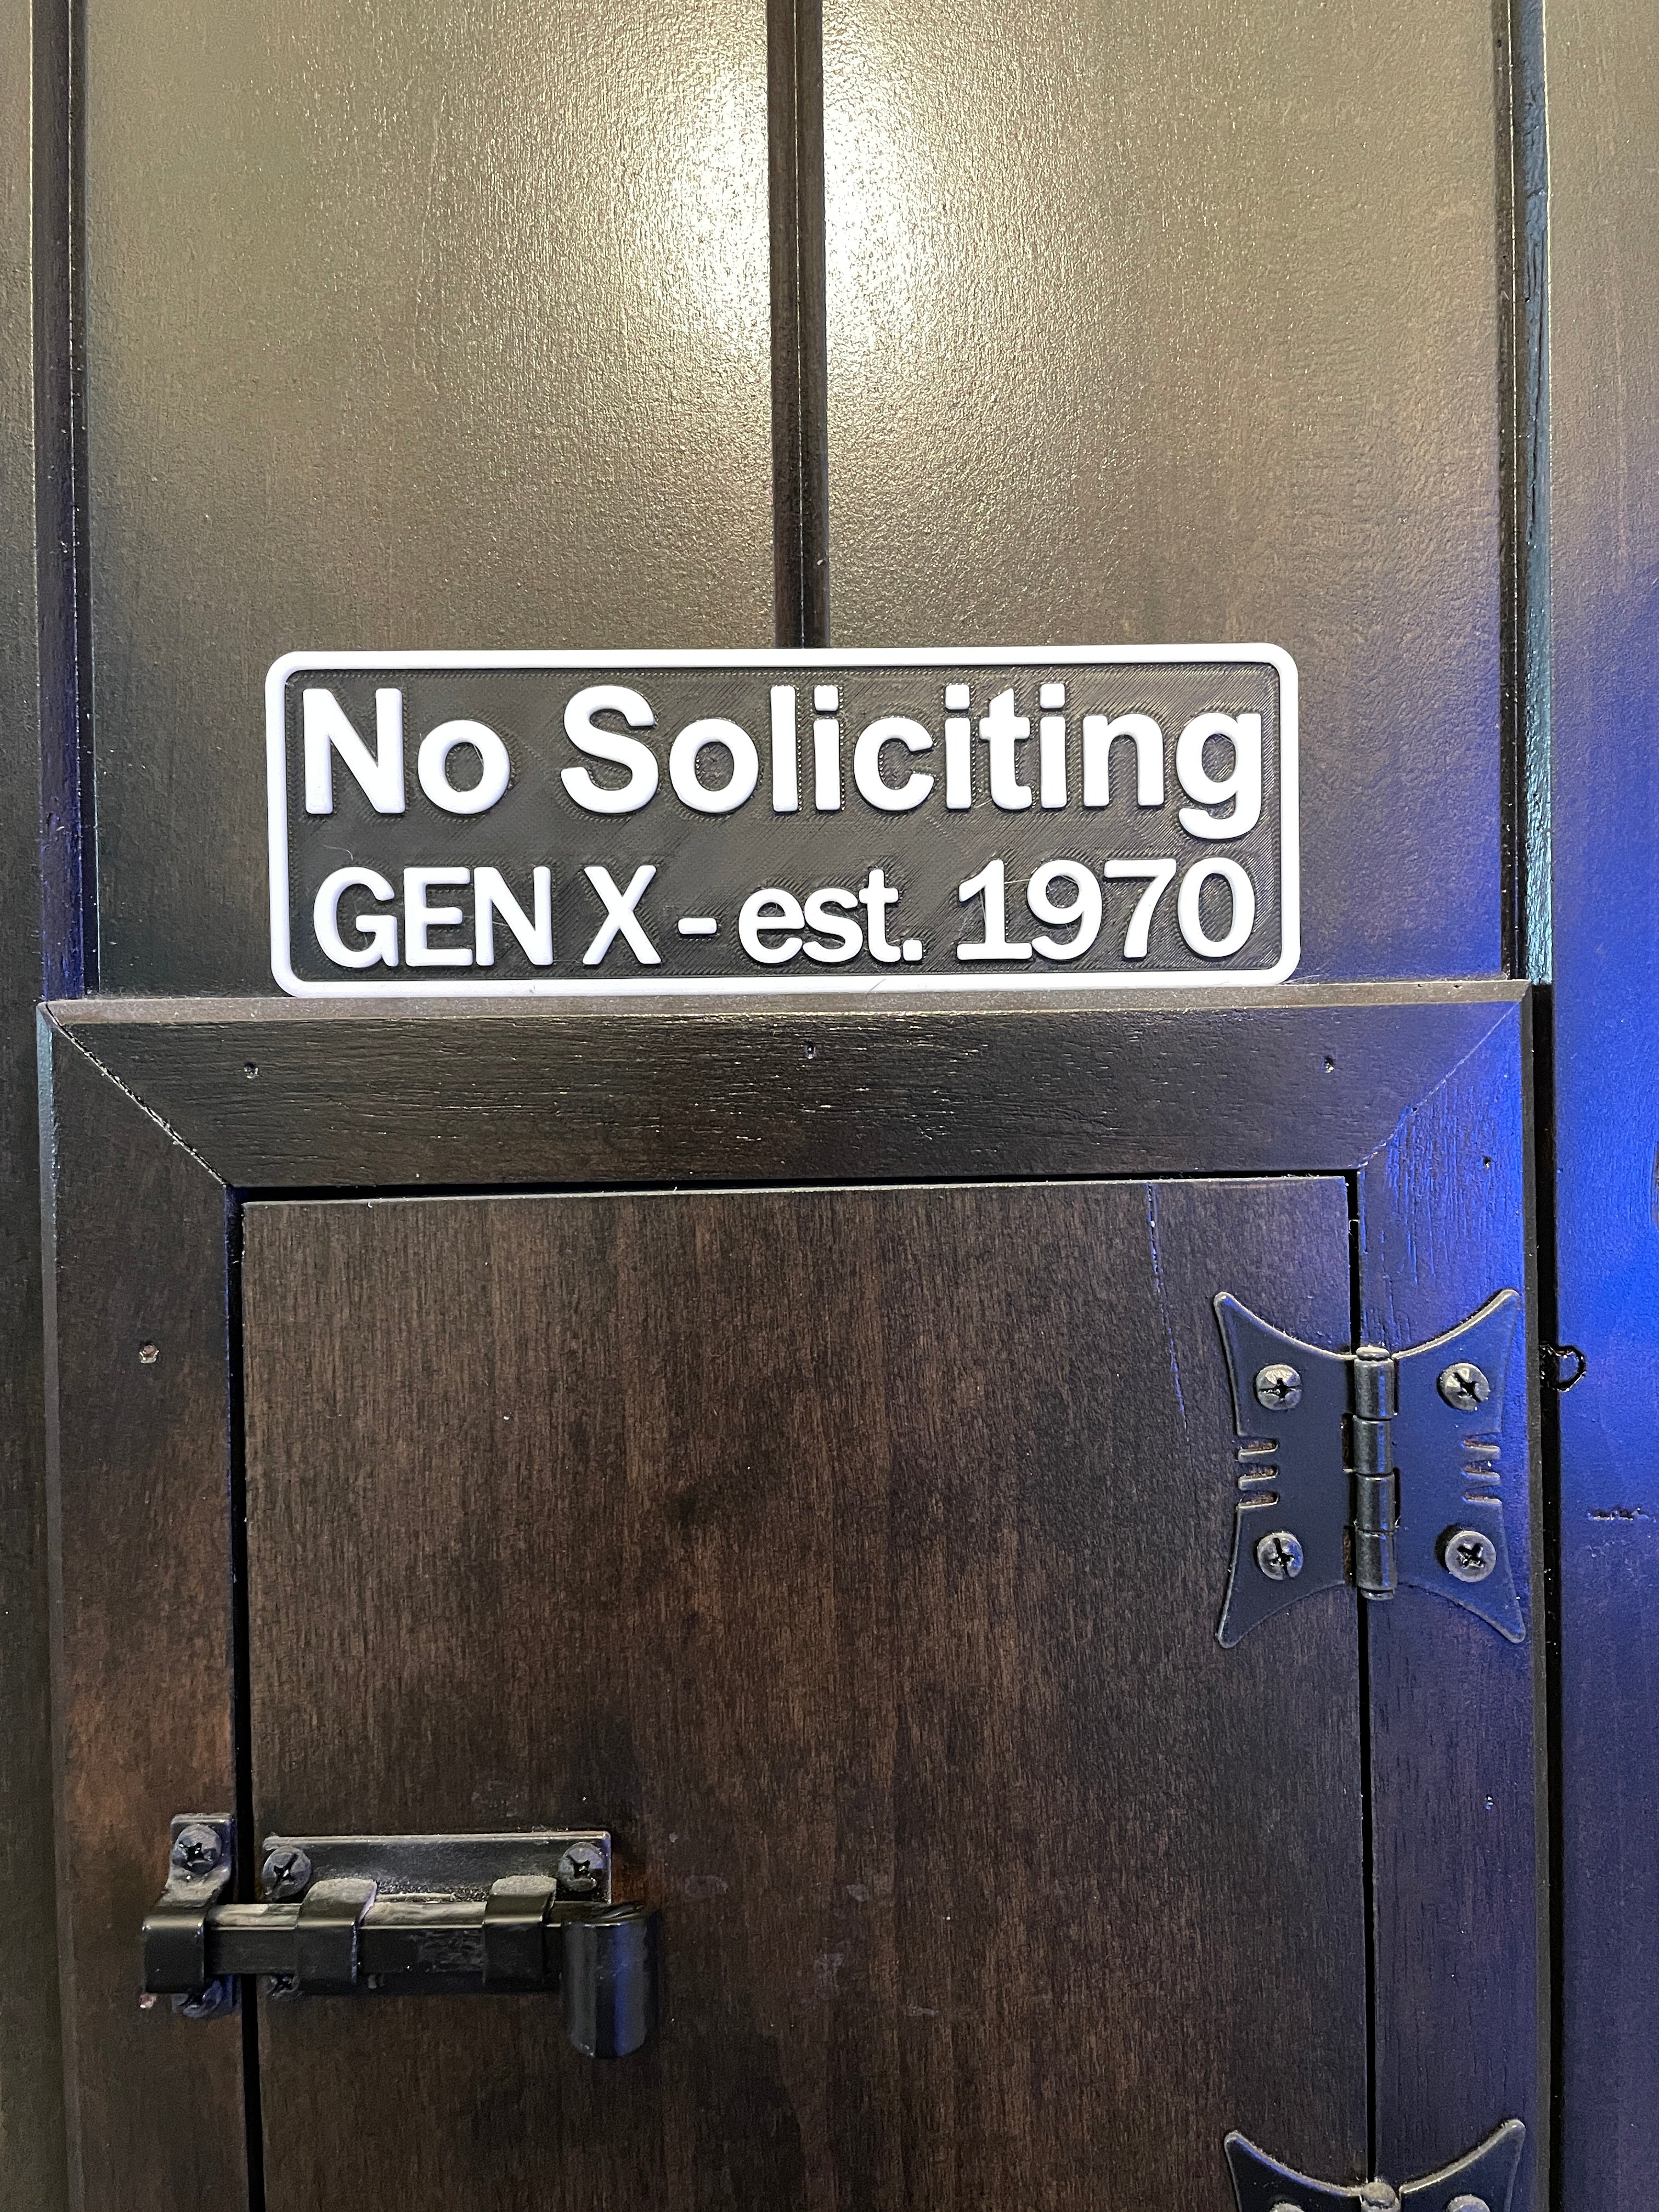 No Soliciting Gen X - est. 